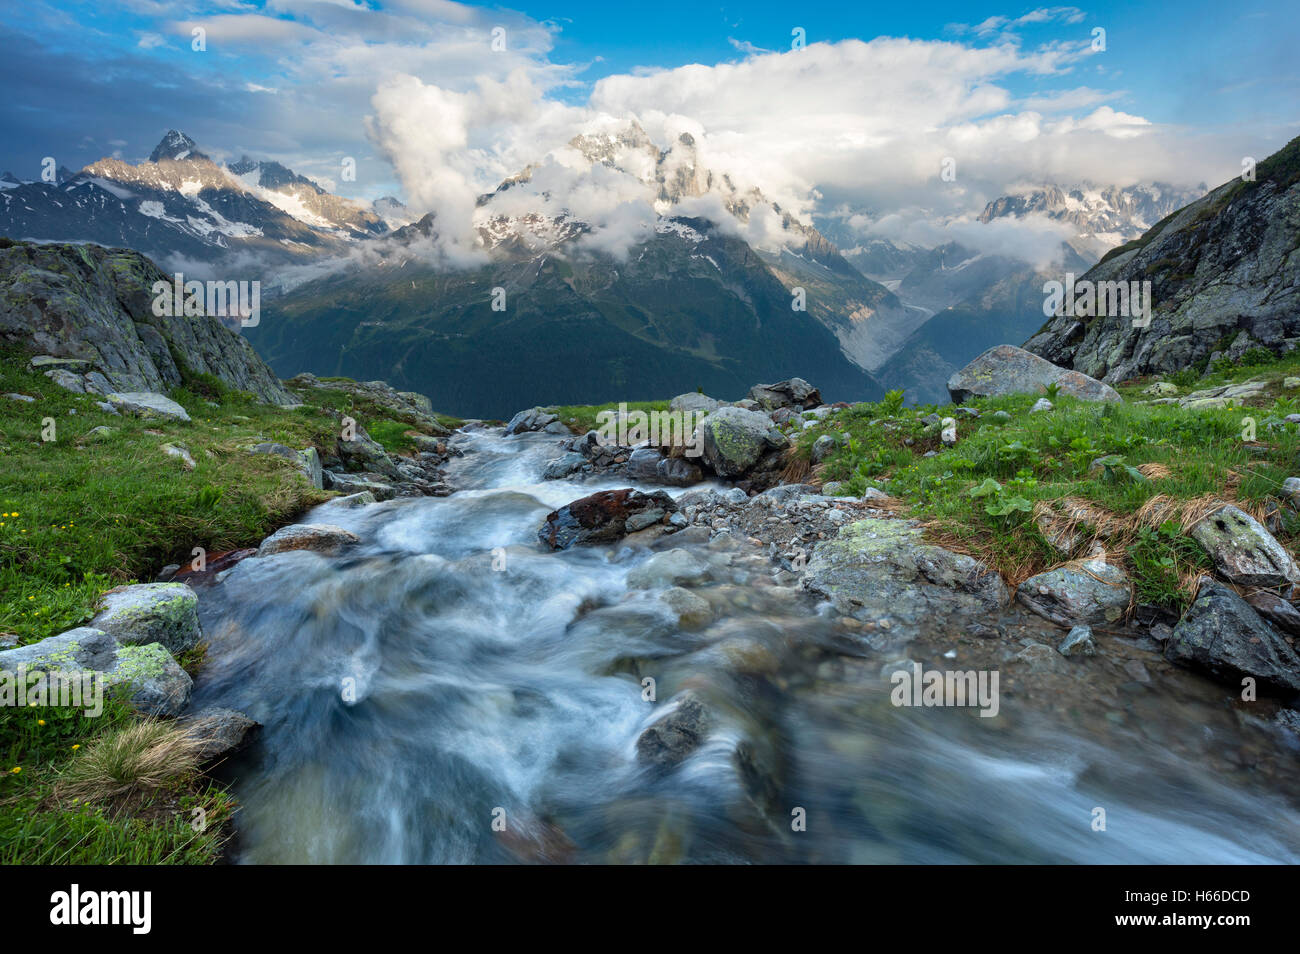 Arroyo debajo de la Aiguille Verte, Valle de Chamonix, Alpes franceses, Francia. Foto de stock